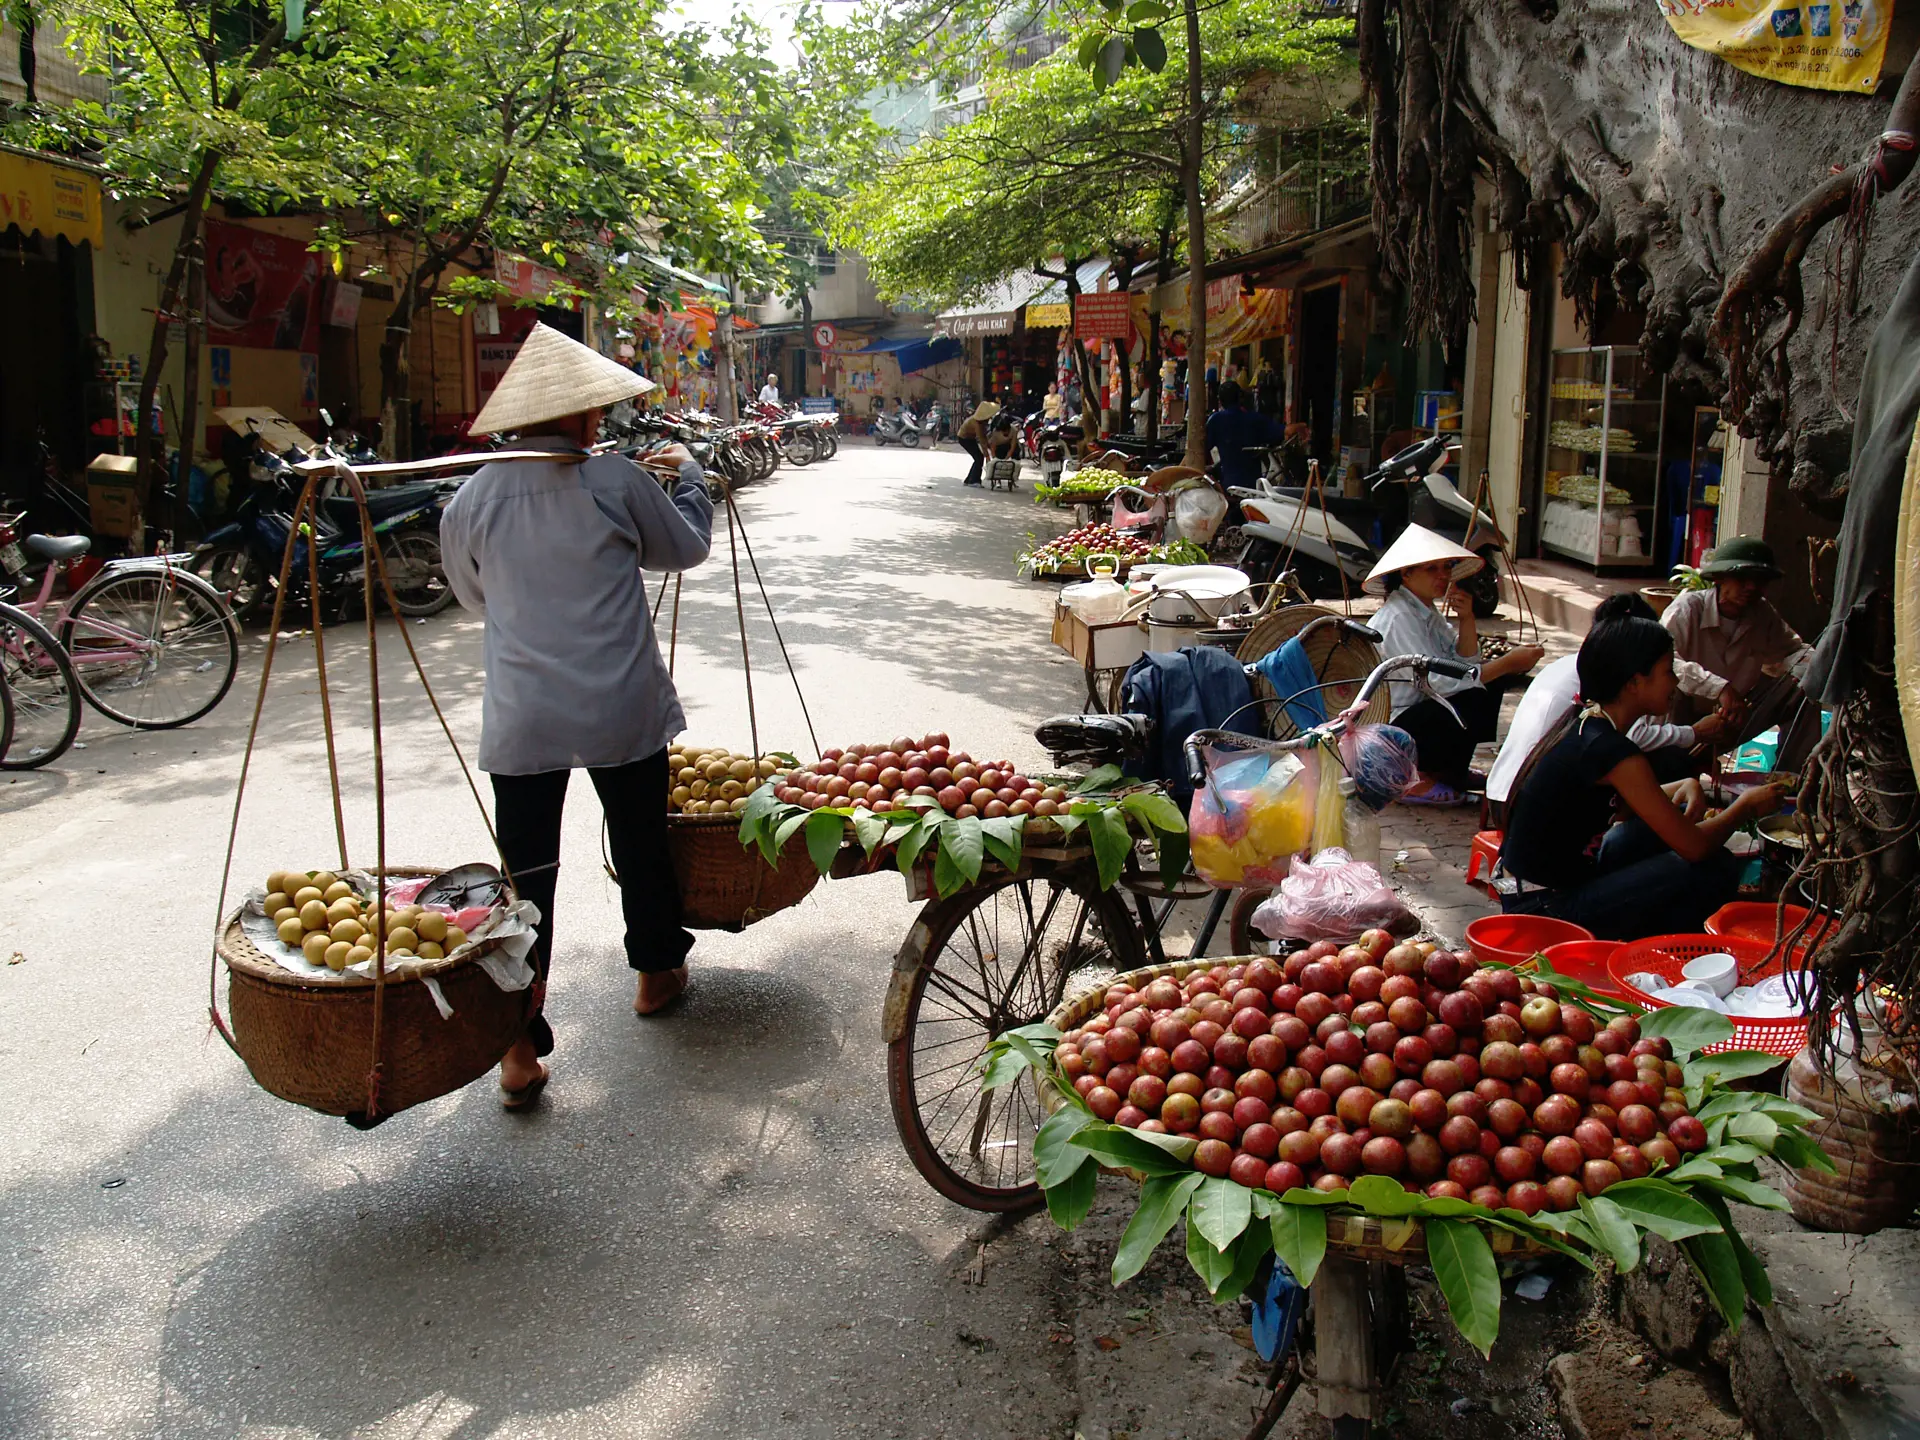 HANOI - Man kan bruge dage på bare at indsnuse stemningen og betragte gadelivet i Hanois gamle bydel, Check Point Travel